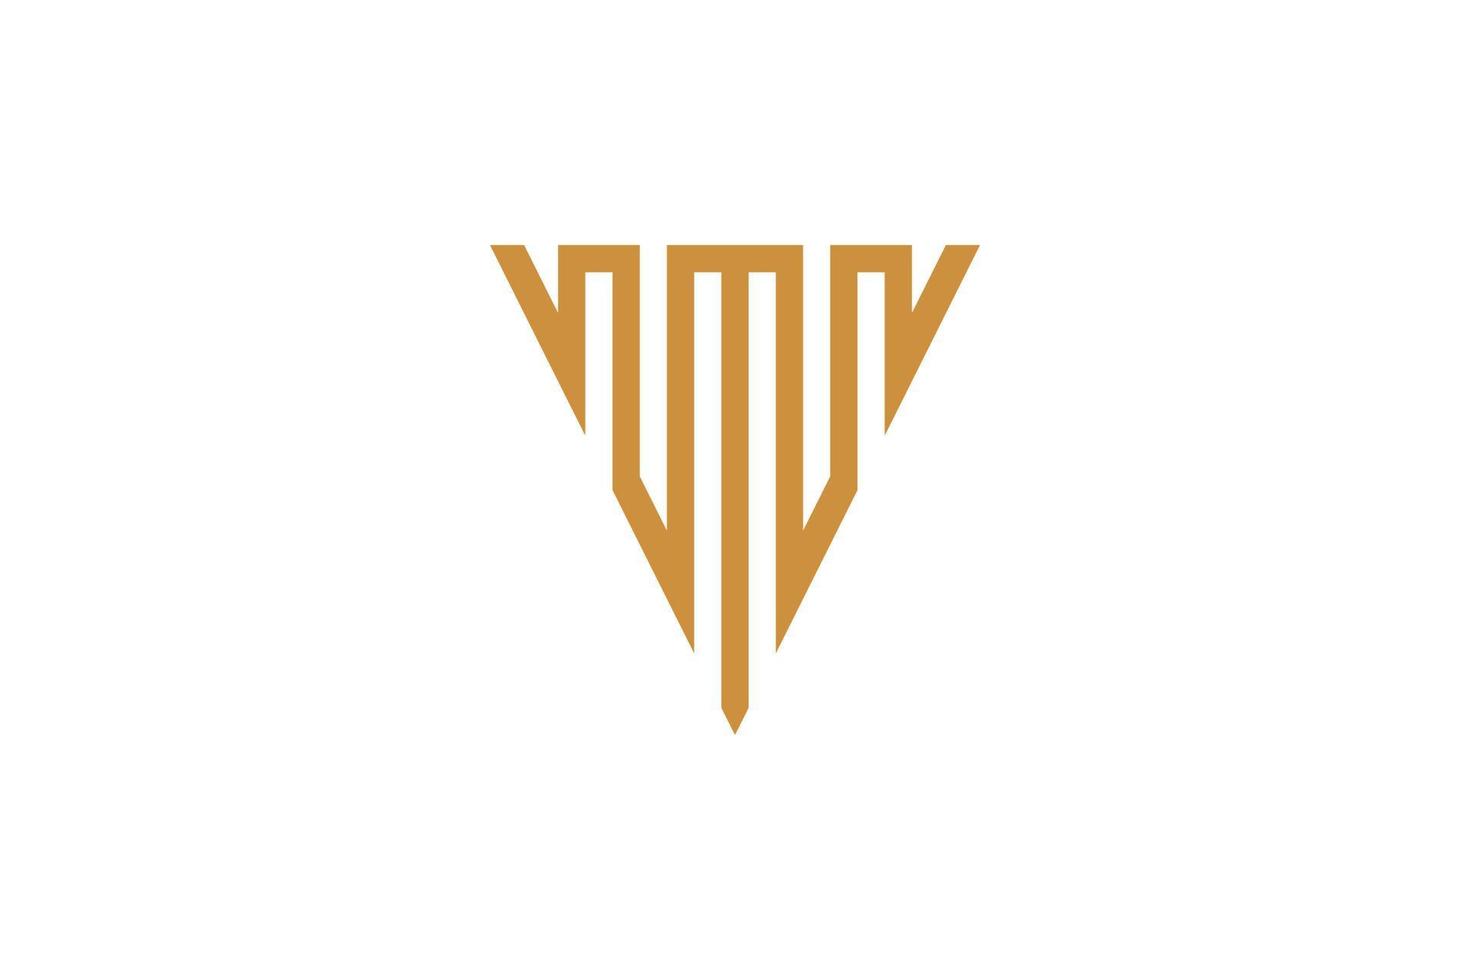 The Monoline V Logo vector